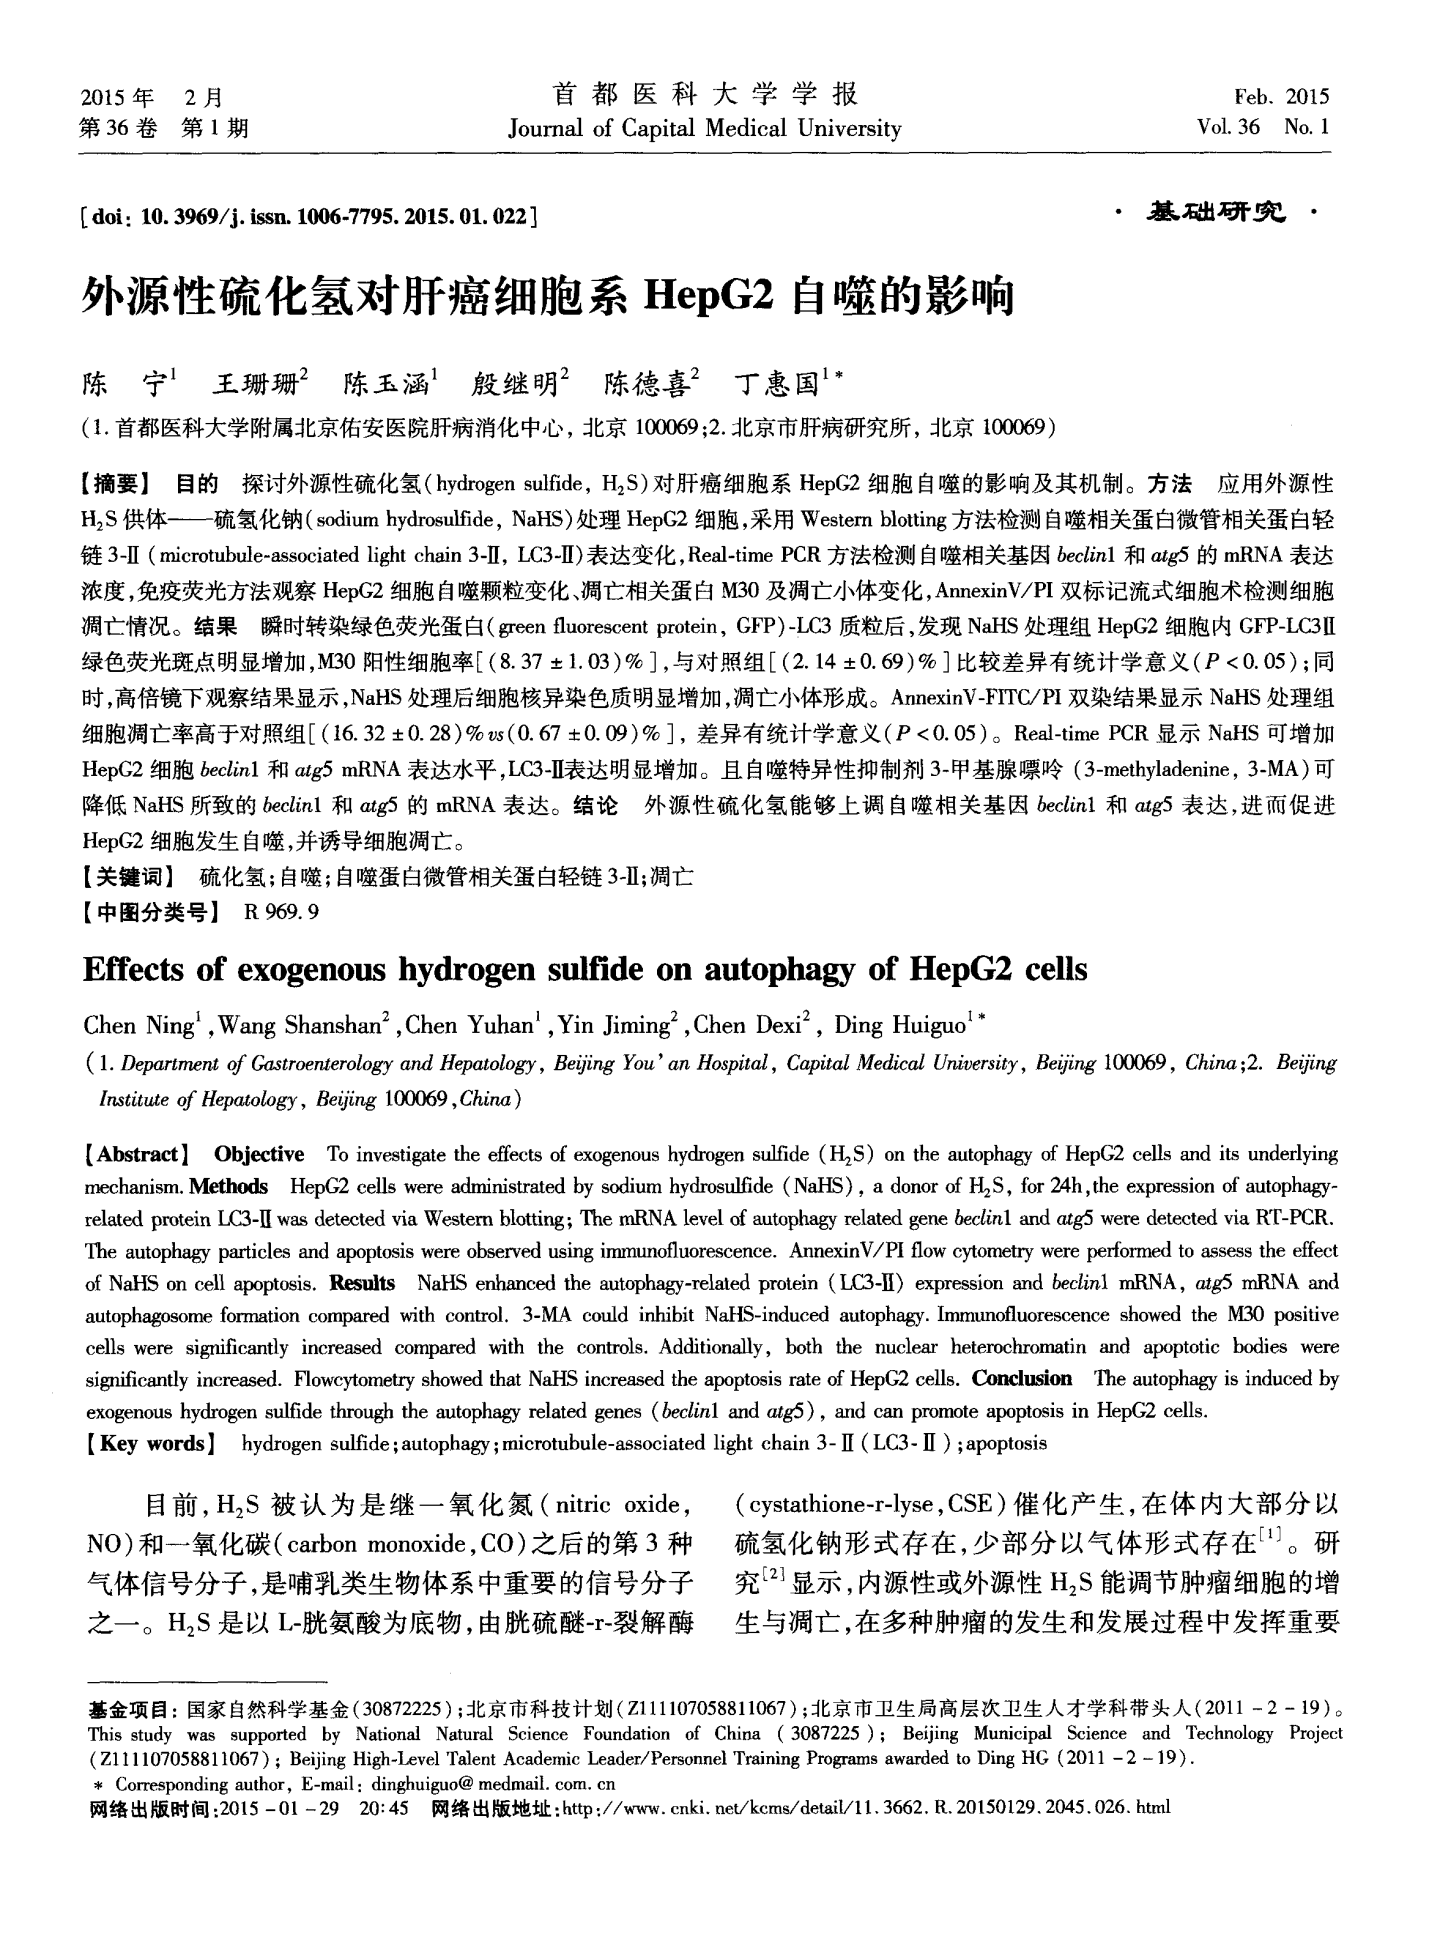 外源性硫化氢对肝癌细胞系HepG2自噬的影响